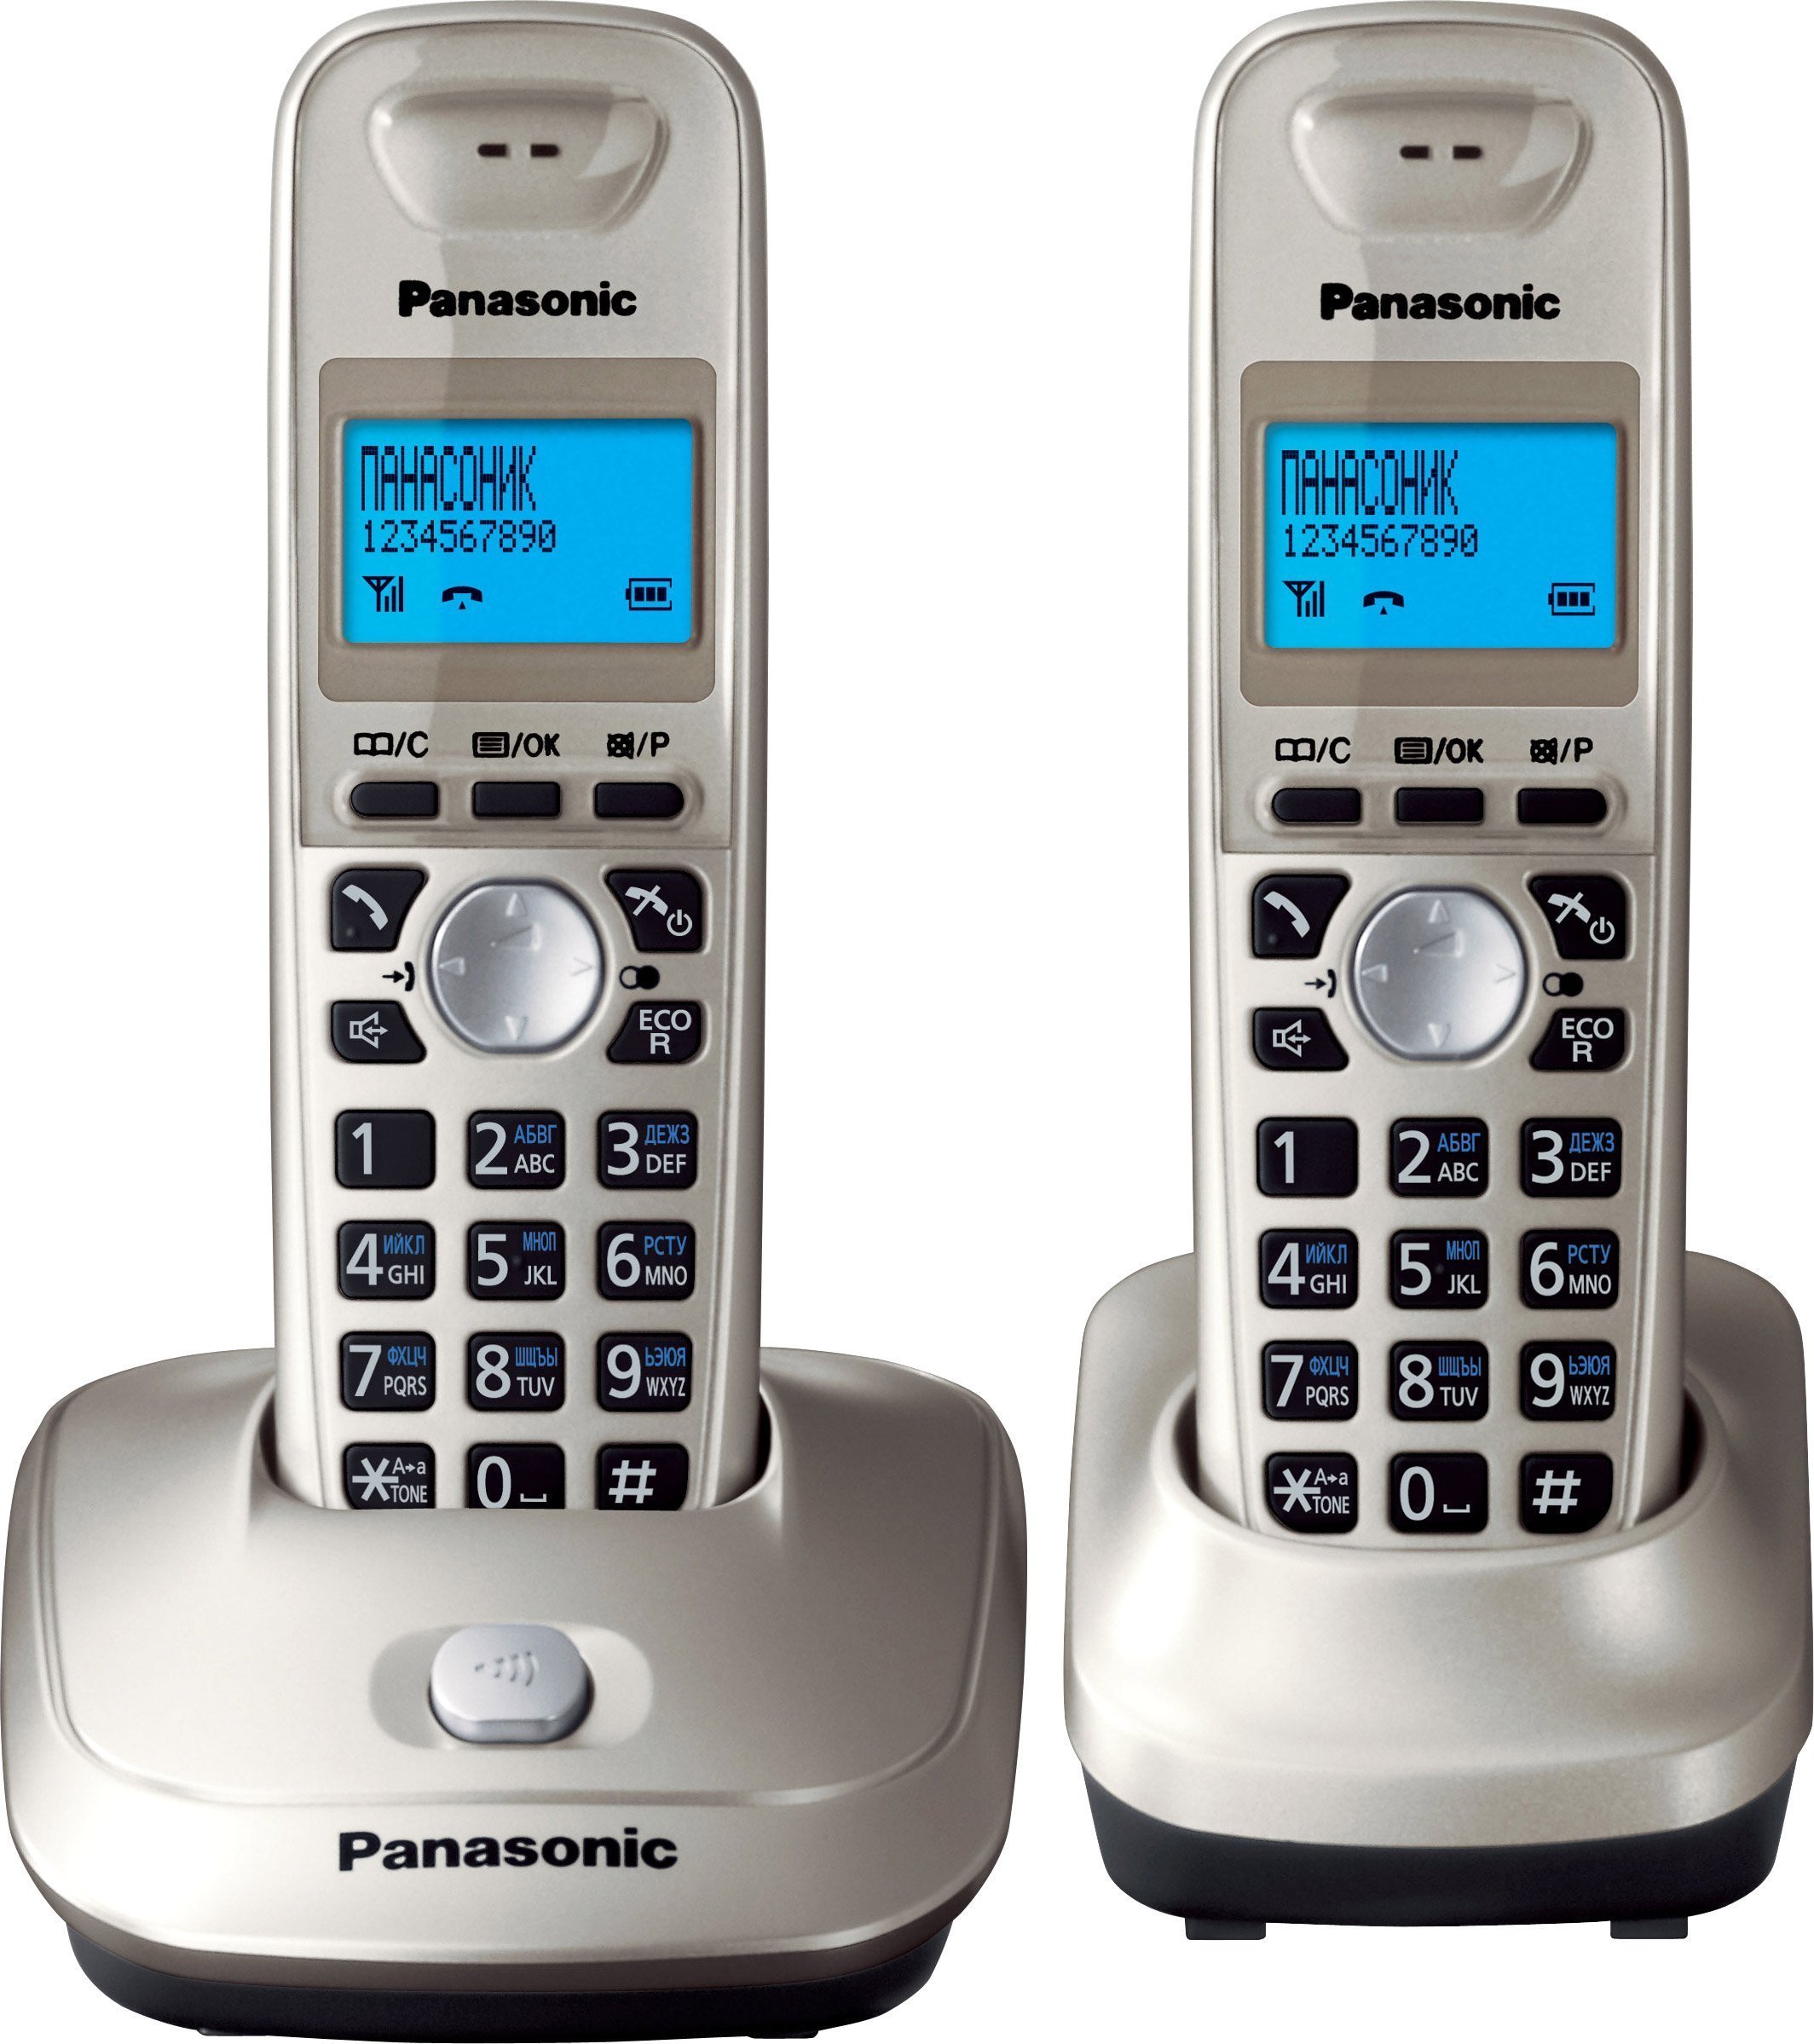 Домашний телефон компании. KX-tg2512run. Радиотелефон Panasonic KX-tg2512. Радиотелефон Panasonic DECT KX-tg2512uam. Телефон Panasonic KX-tg2512ru1.